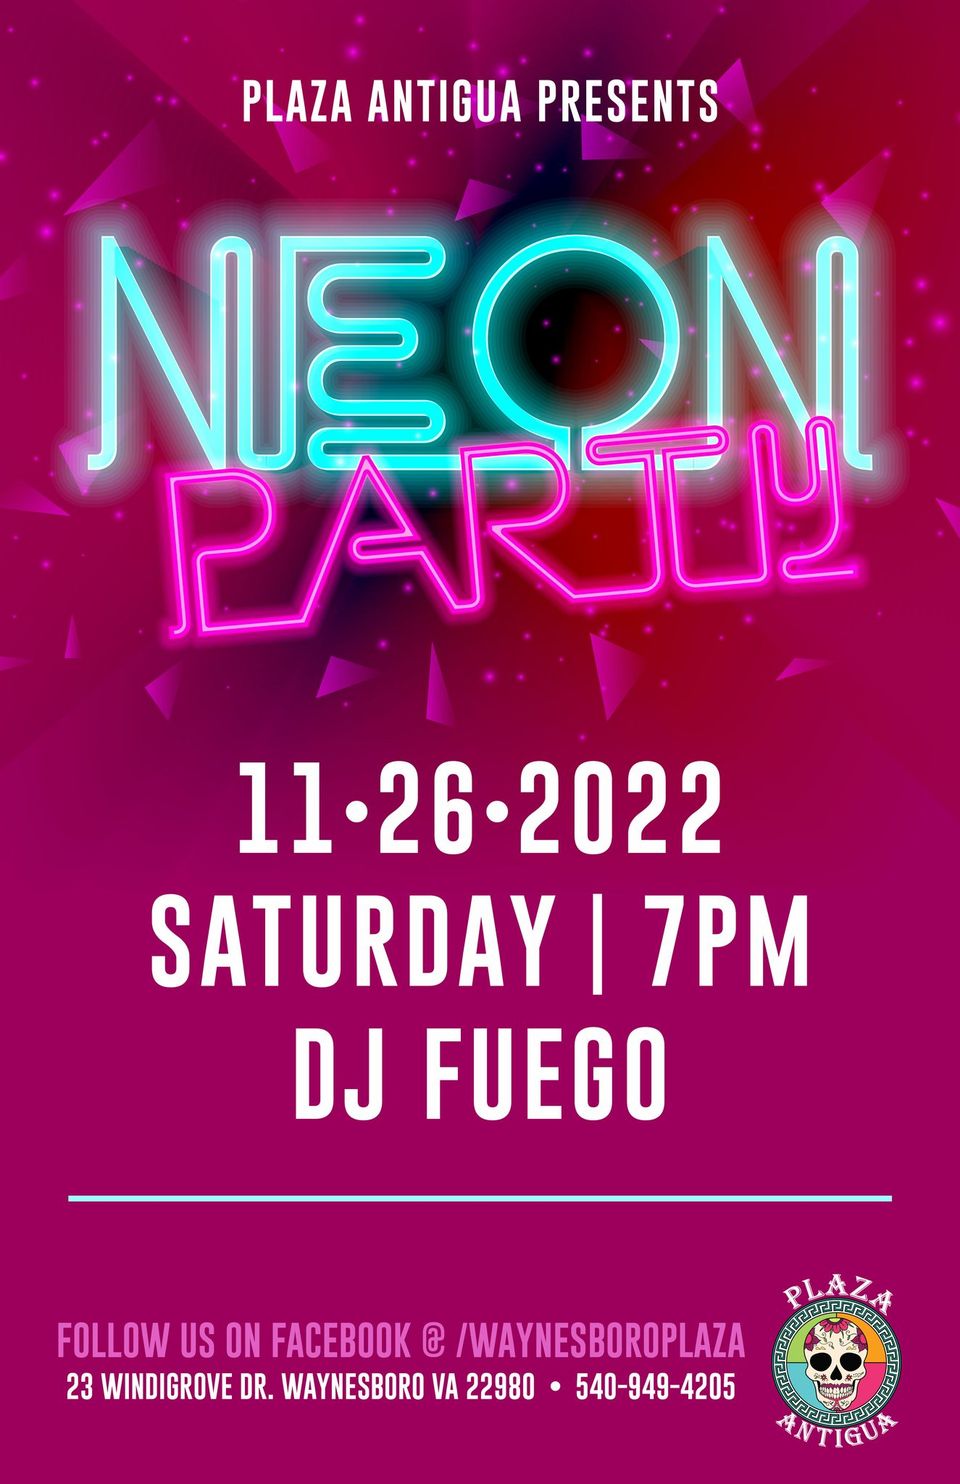 Neon Party @ Plaza Antigua